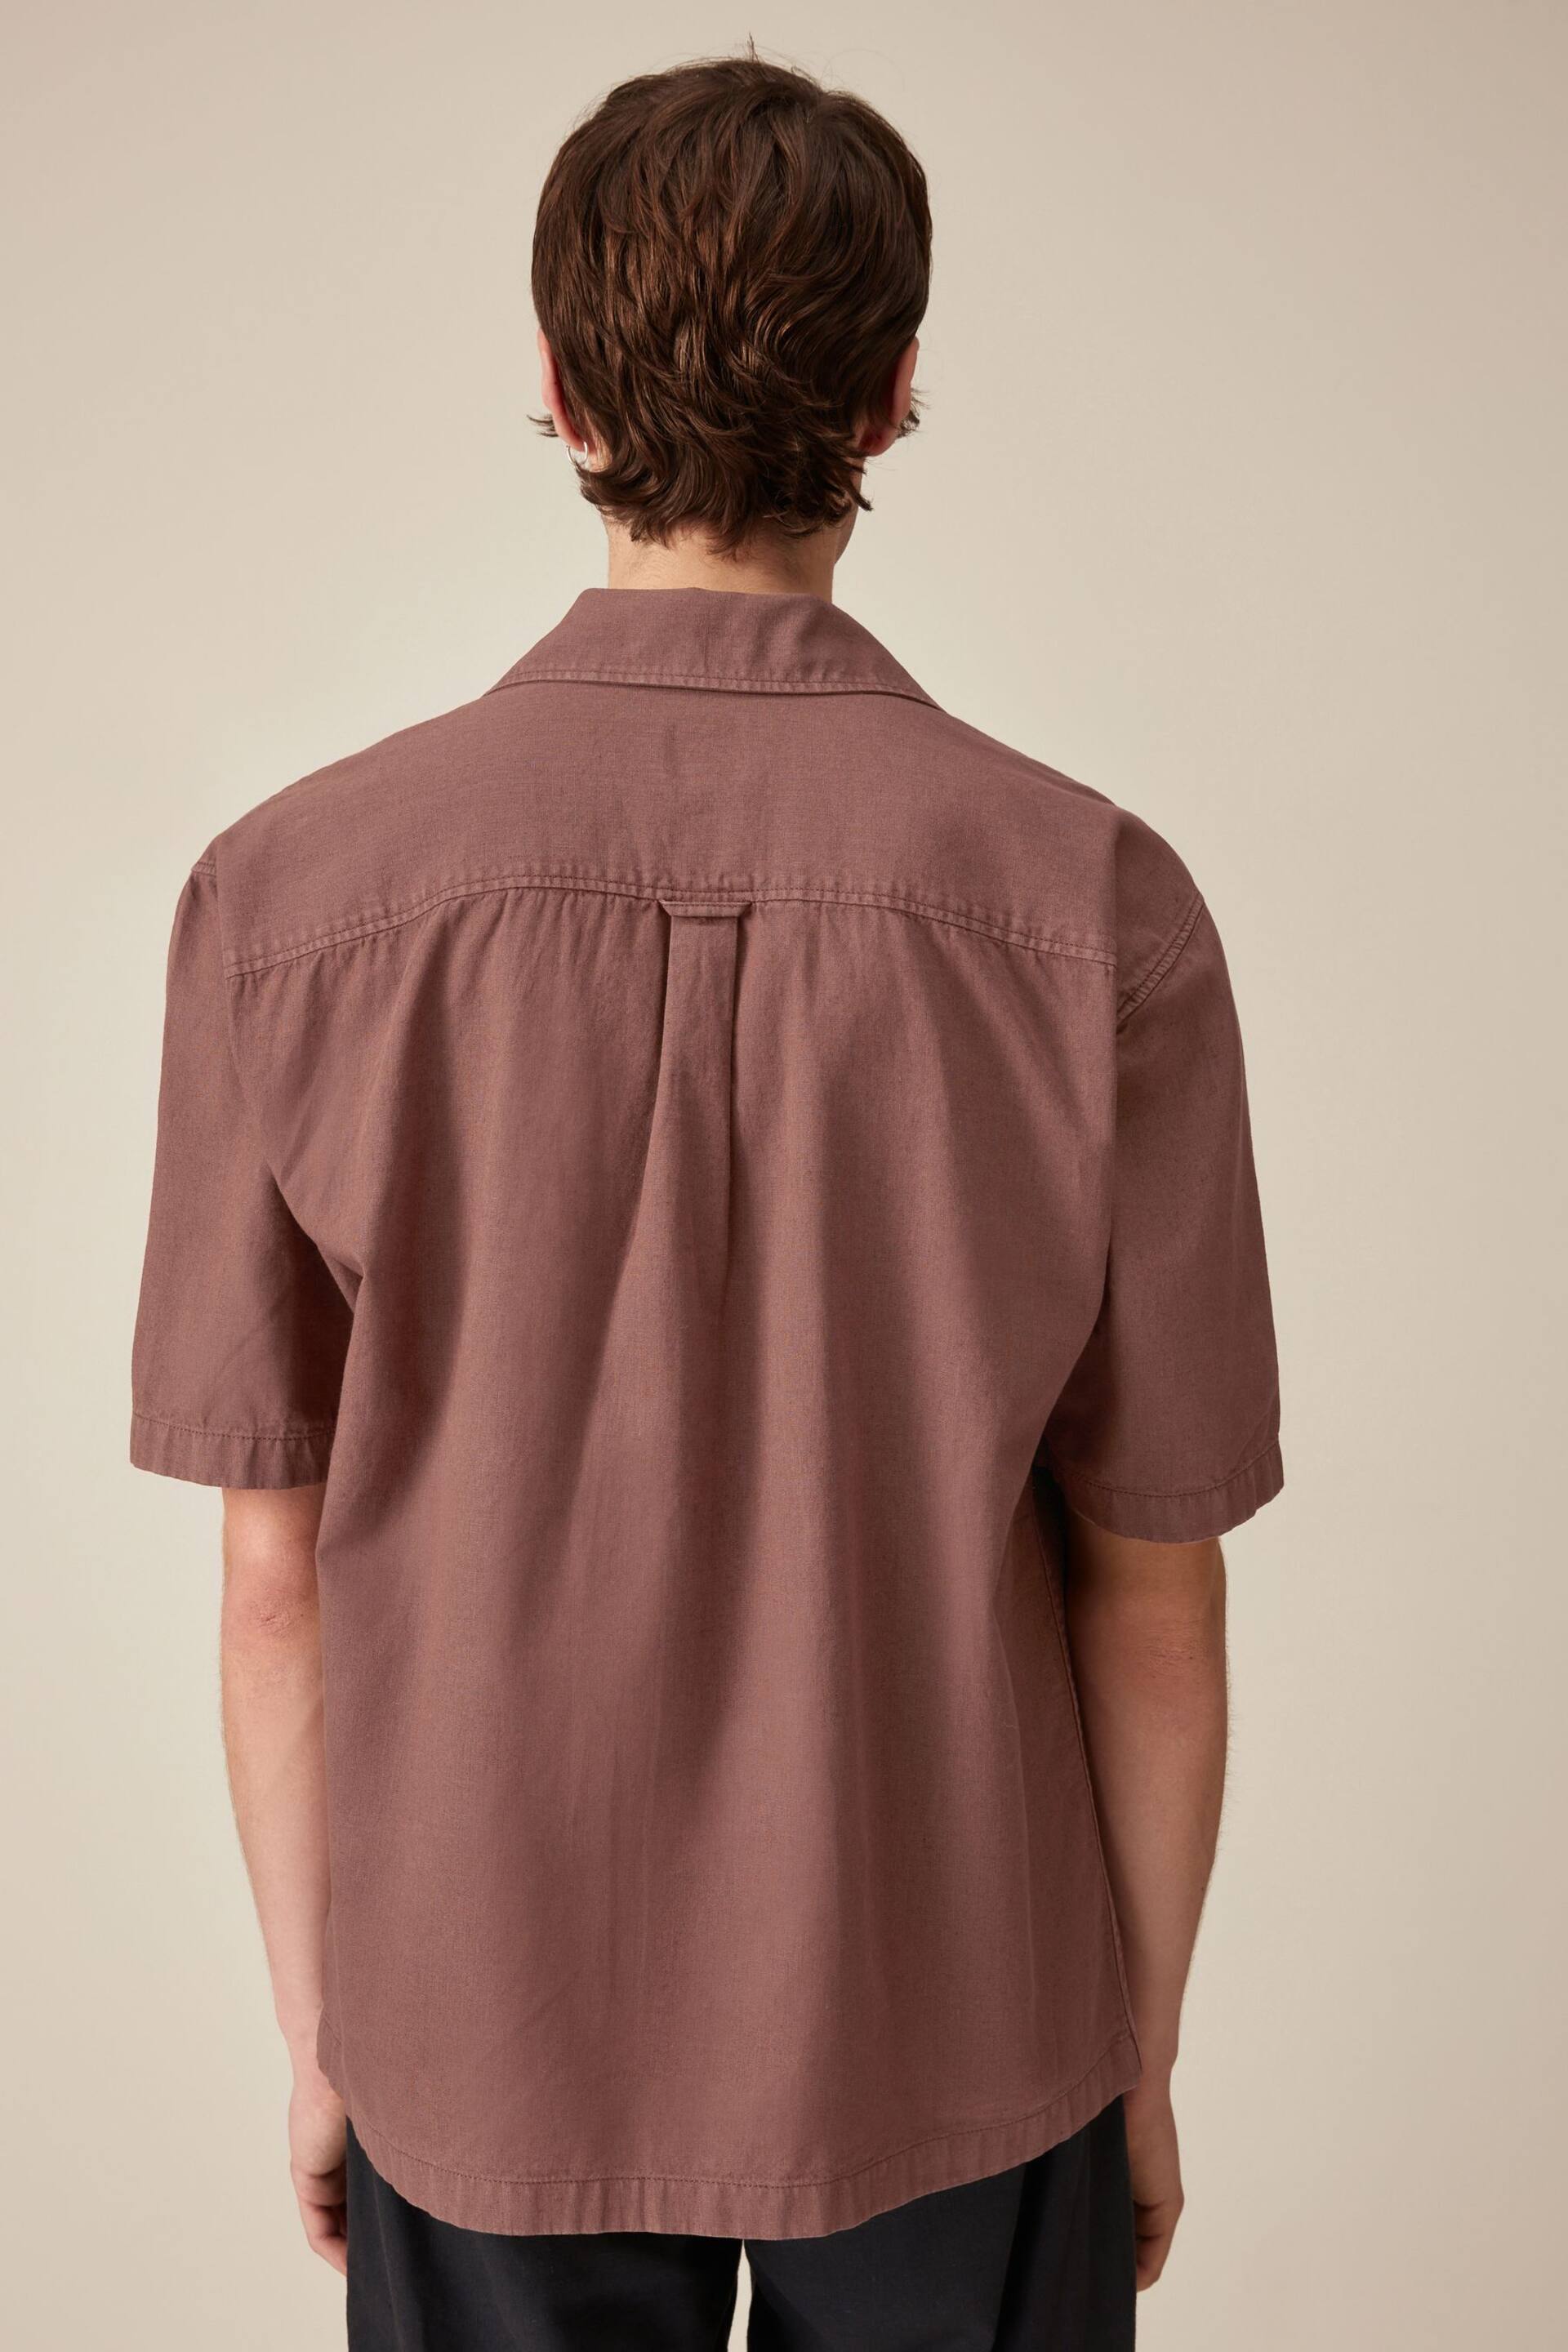 Rust Brown Linen Blend Short Sleeve Shirt with Cuban Collar - Image 3 of 9